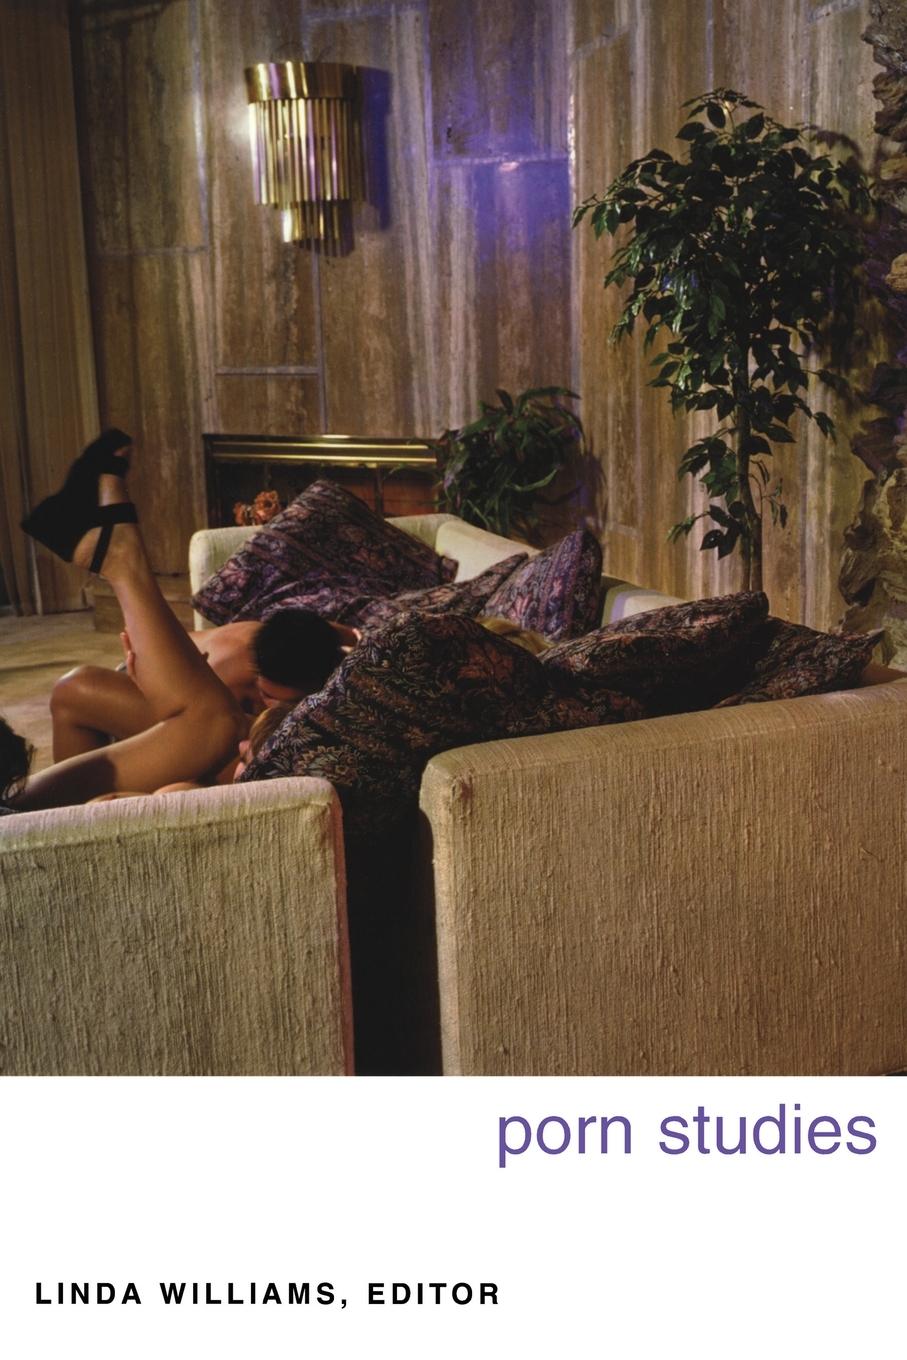 Porn Studies | Linda Williams | Taschenbuch | Kartoniert / Broschiert | Englisch | 2004 | Duke University Press | EAN 9780822333128 - Williams, Linda